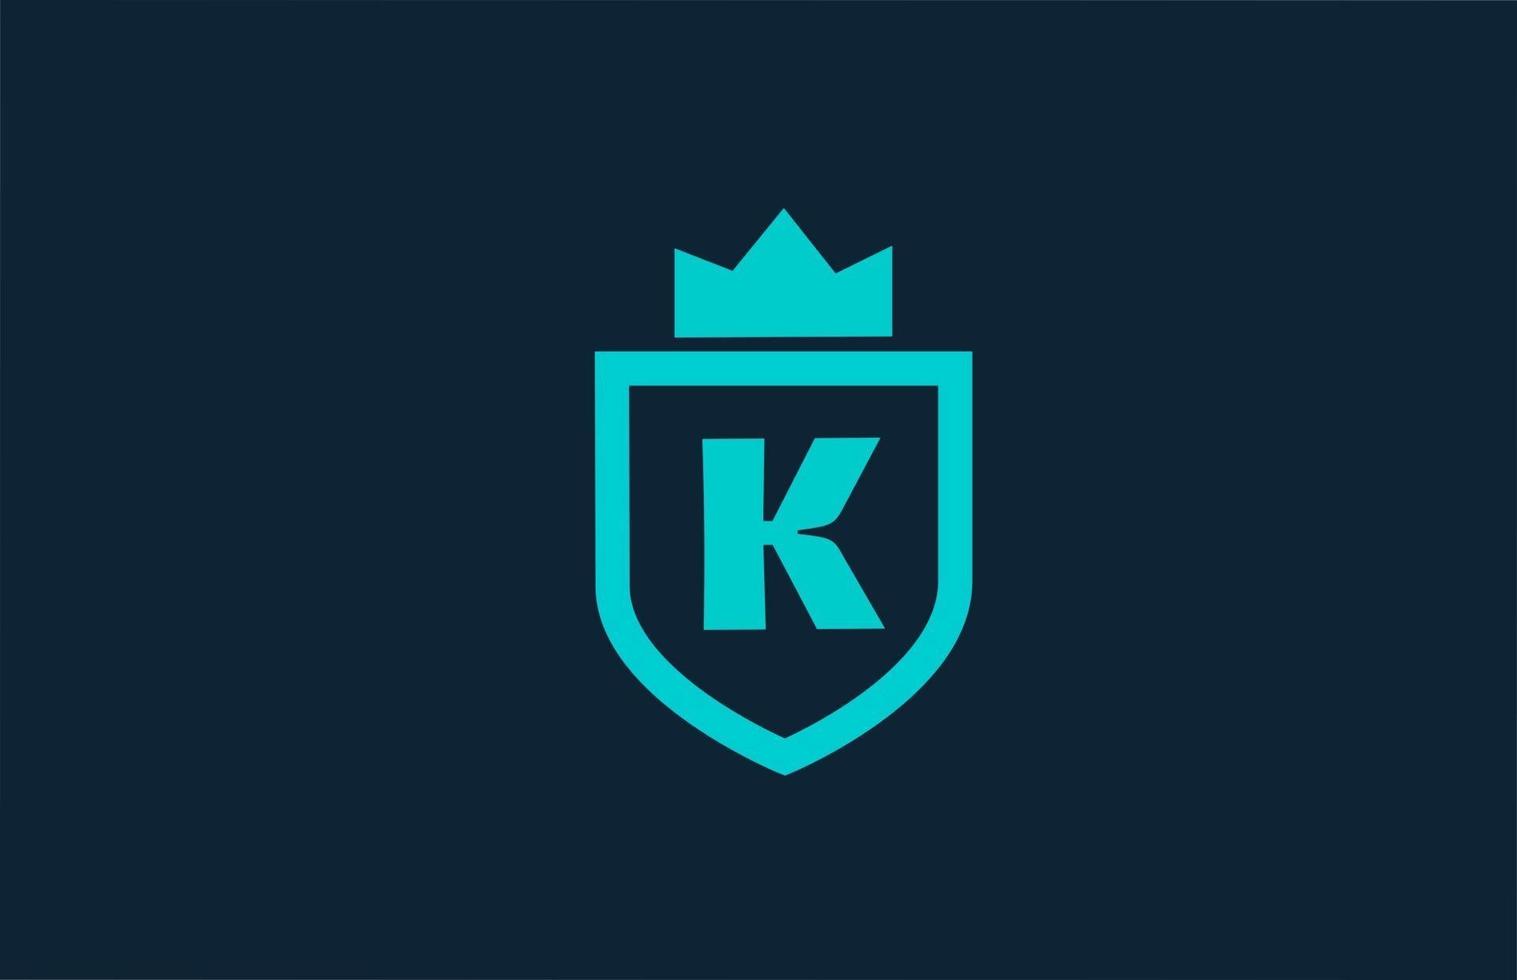 k logo d'icône alphabet bouclier bleu pour entreprise avec lettre. design créatif pour entreprise et entreprise avec couronne royale vecteur